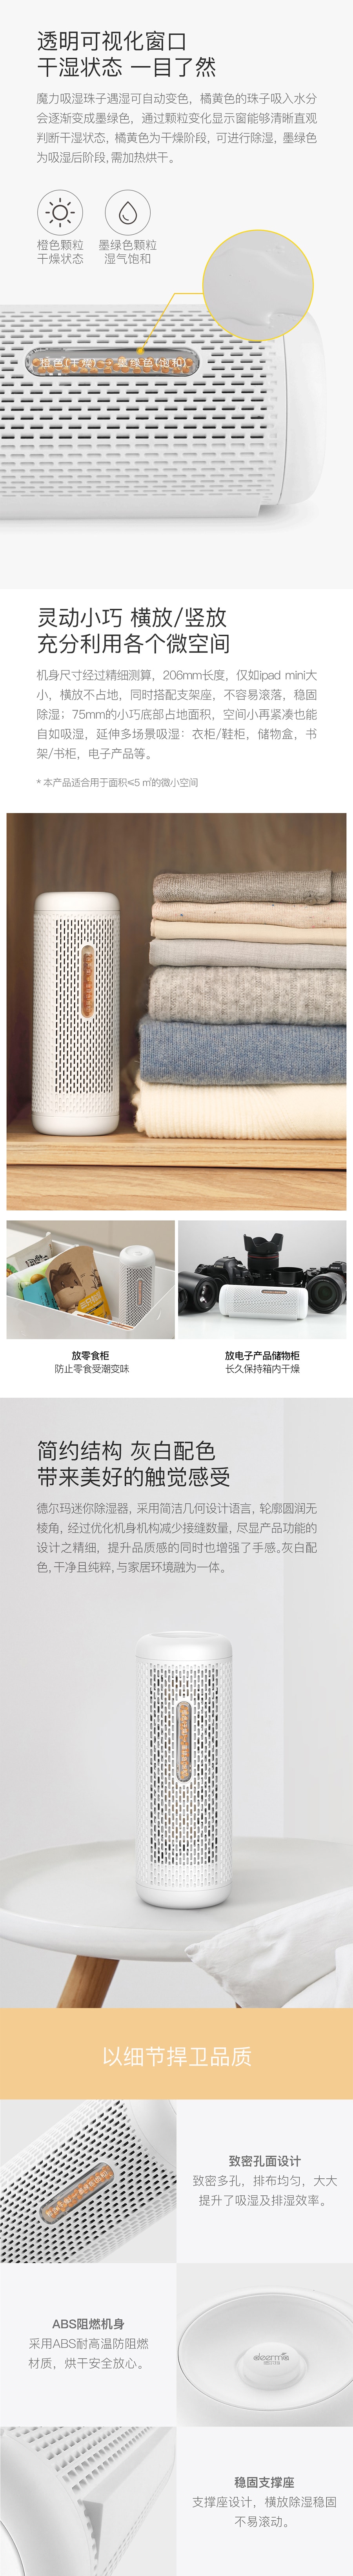 DEERMA Xiaomi deerma dem-cs10m mini deshumidificador deshumidificador de